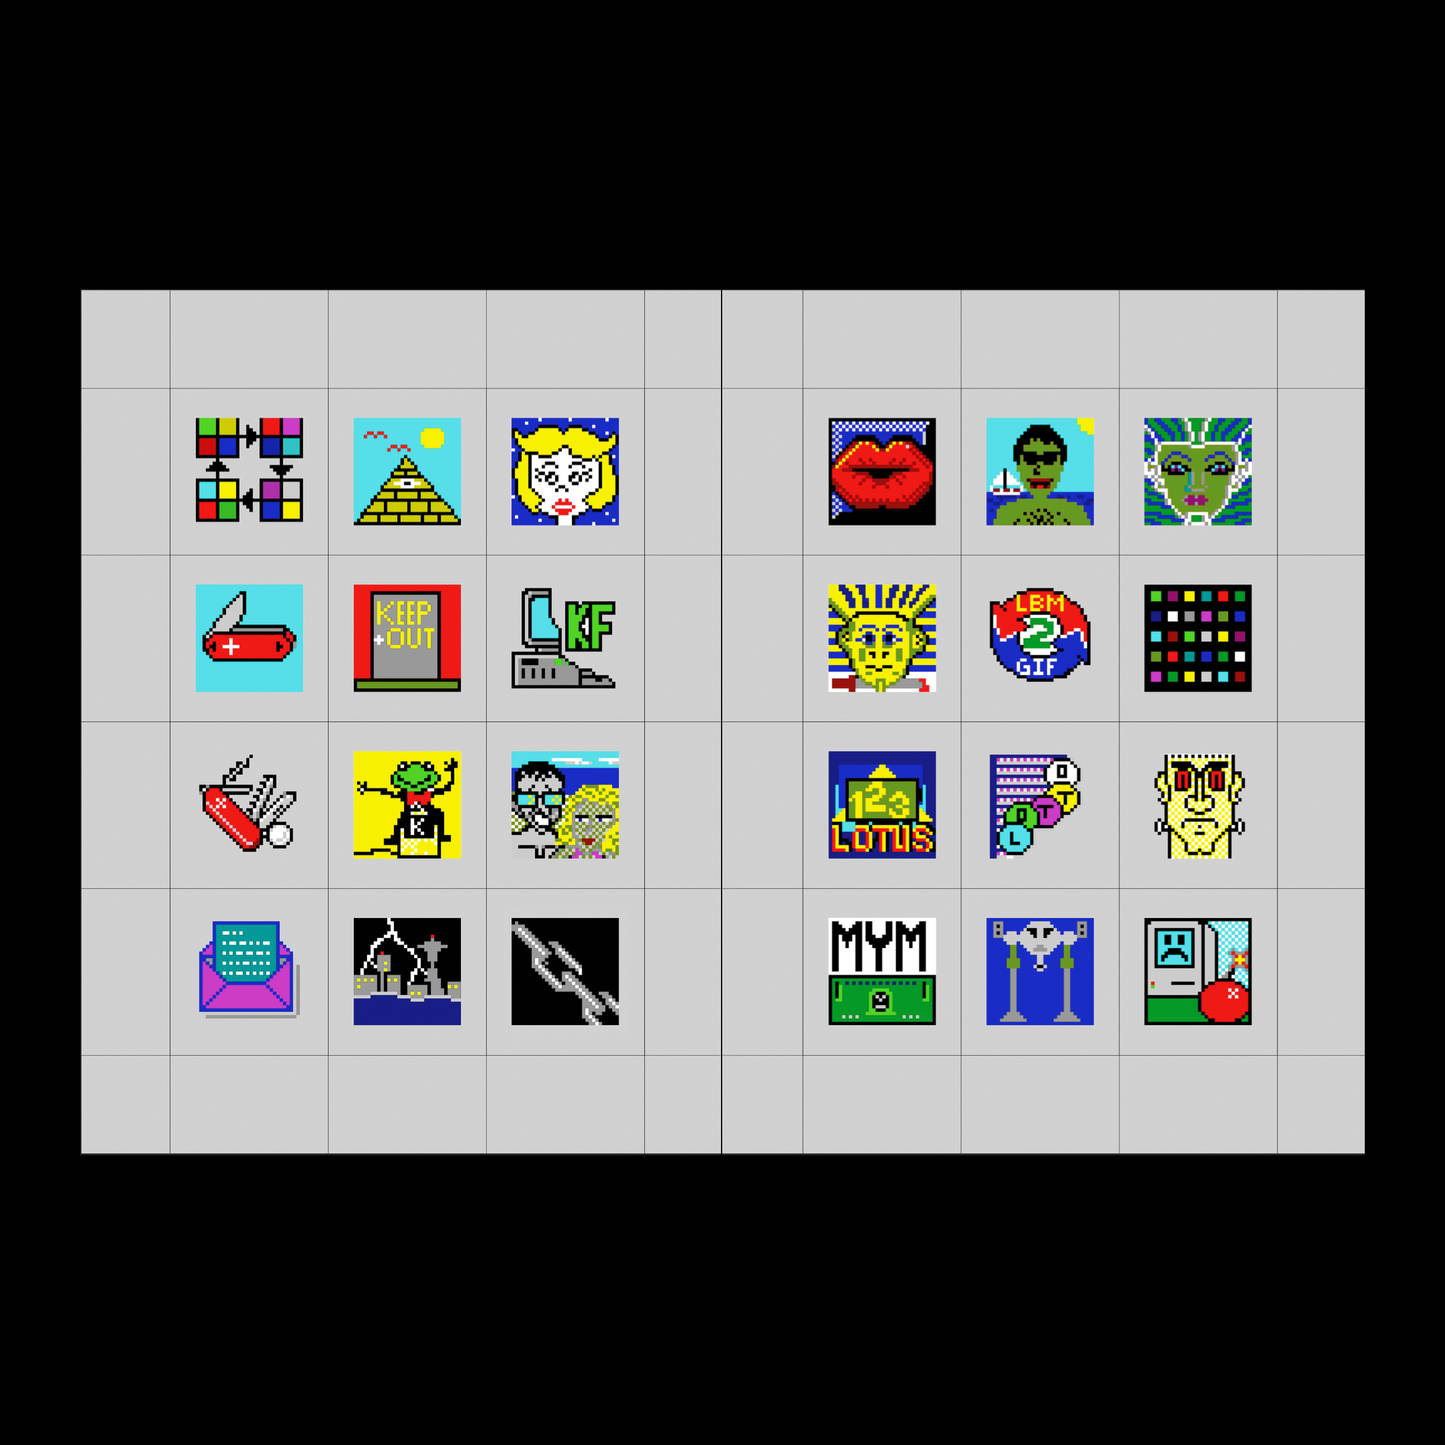 16-bit Icons